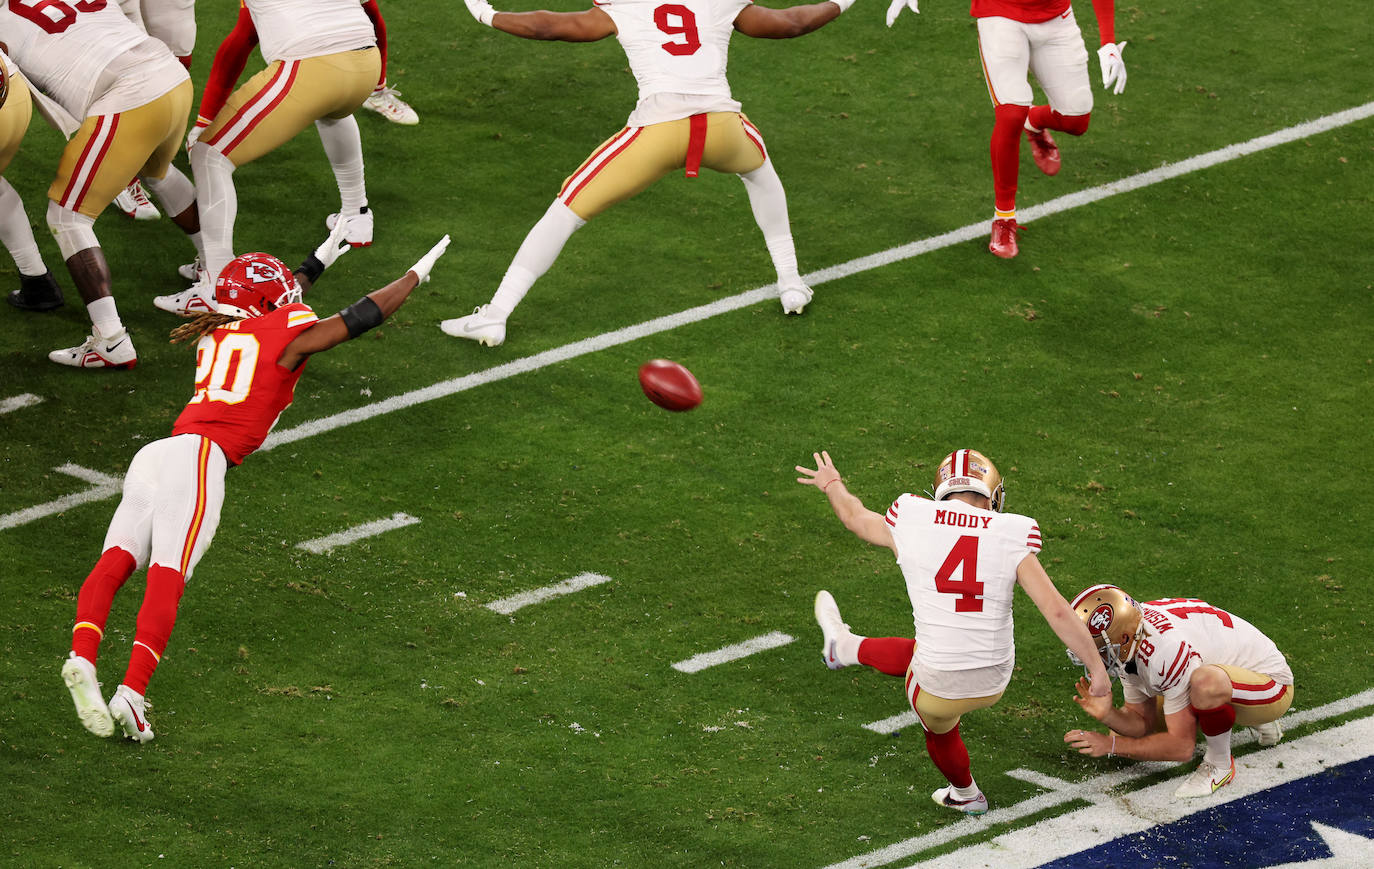 Jake Moody abrió el marcador para los San Francisco 49ers anotando un field goal desde 55 yardas, lo que establecía un nuevo récord de distancia en la Super Bowl.